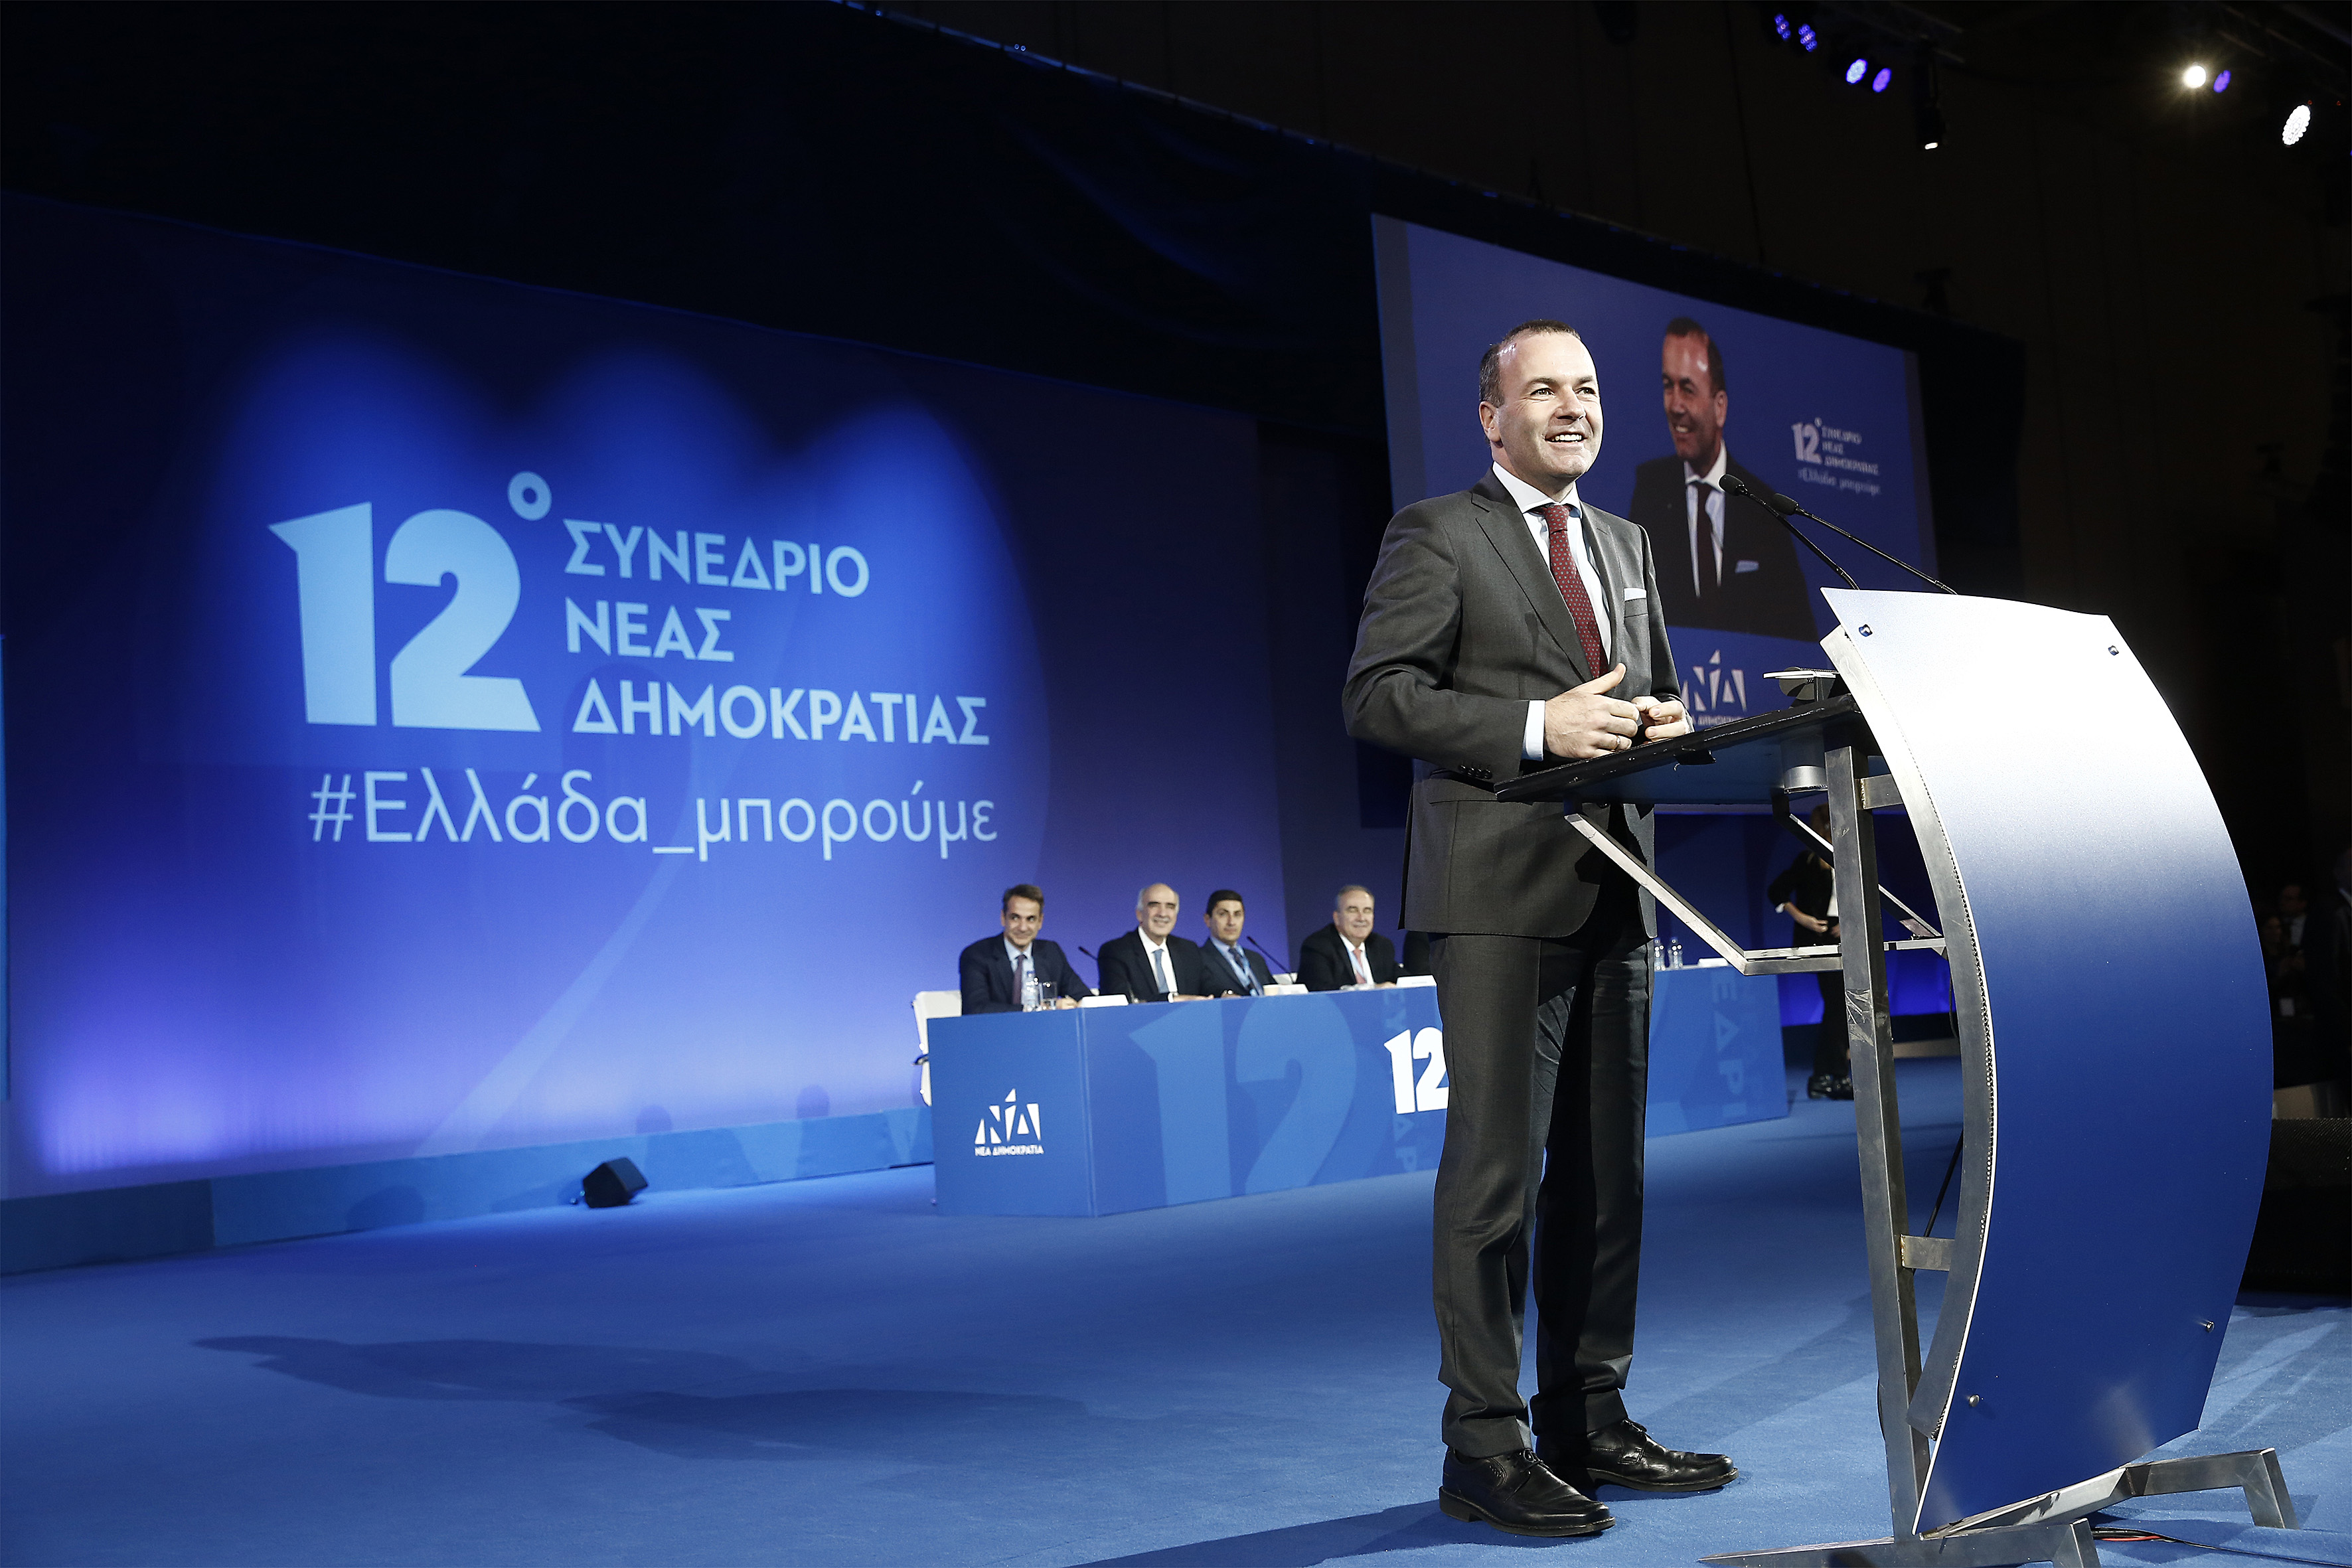 Μάνφρεντ Βέμπερ: «Η ΝΔ θα αποκαταστήσει την αξιοπιστία της Ελλάδας σε όλη την Ευρώπη»